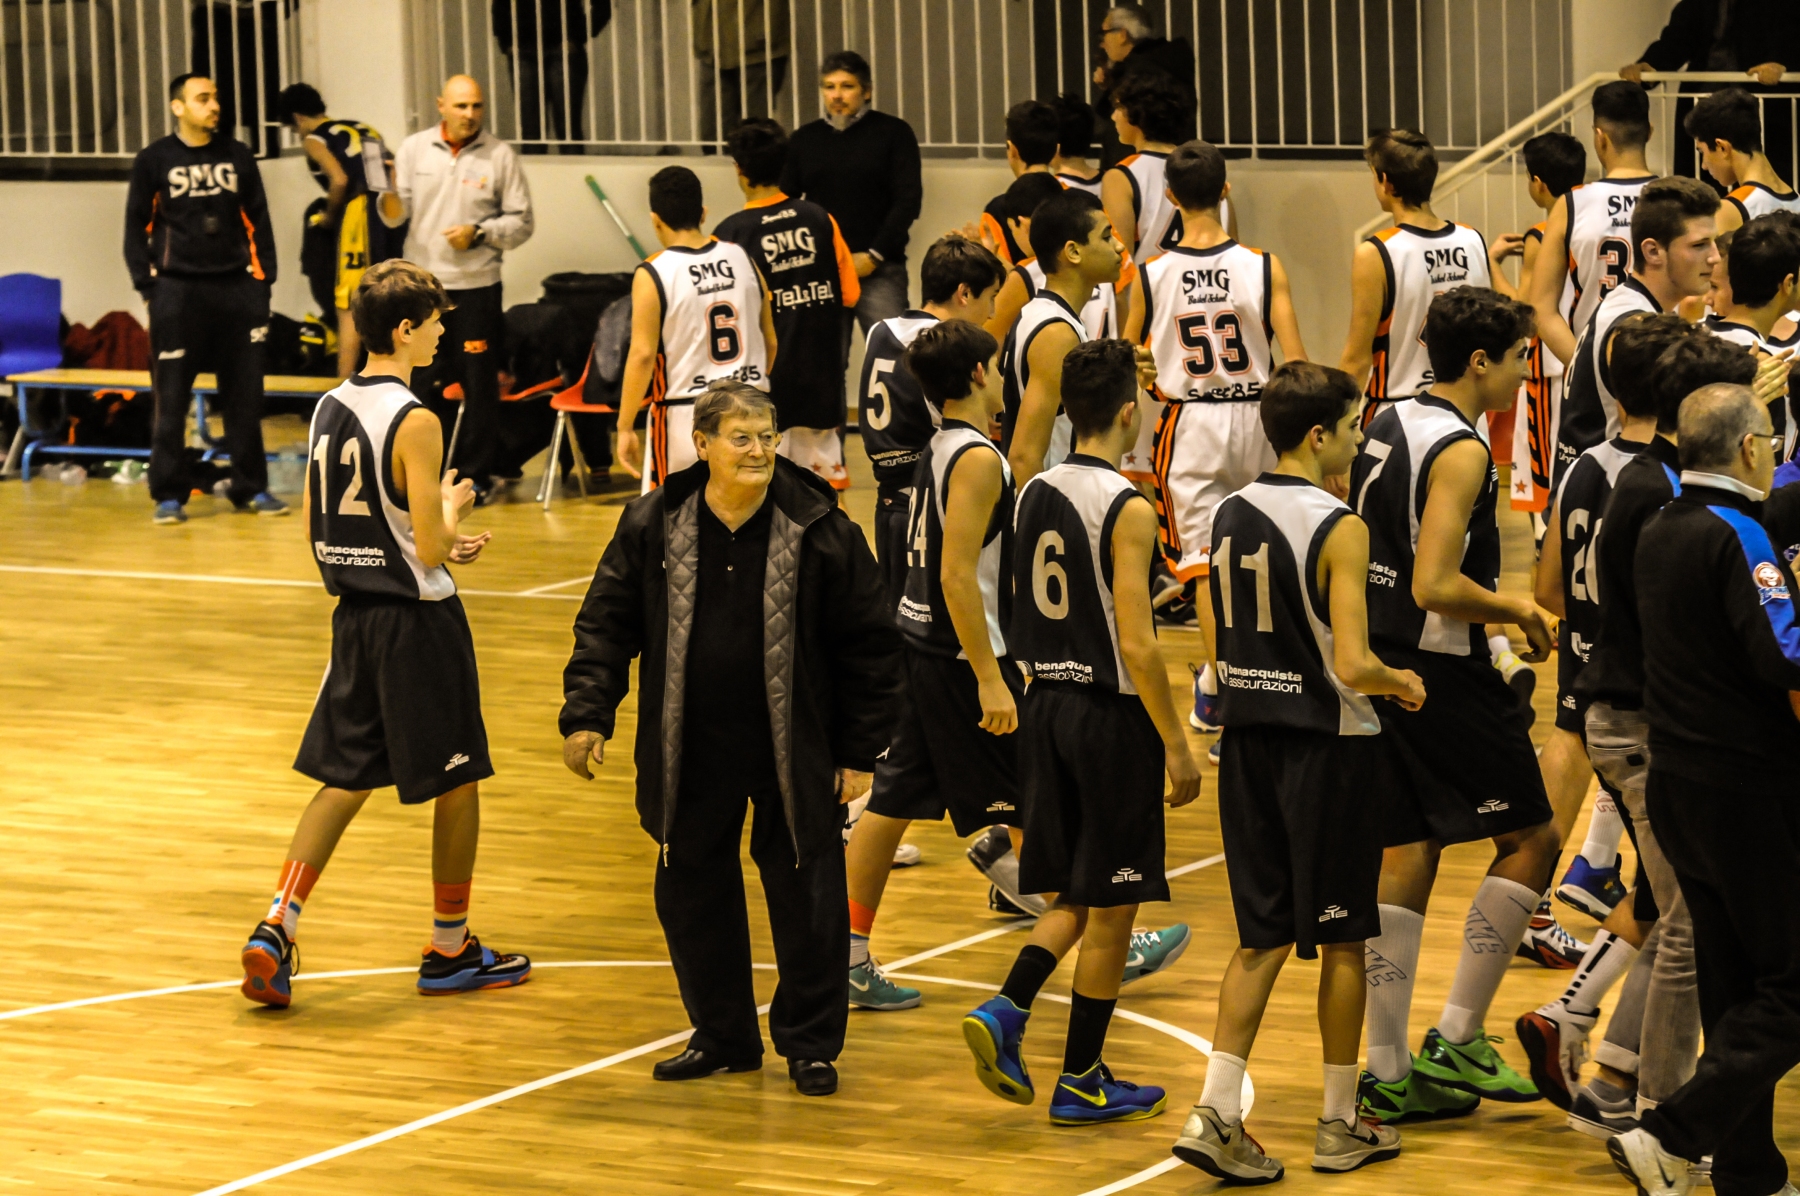 2014-12-10 Under15Ecc Latina Basket - SMG Latina